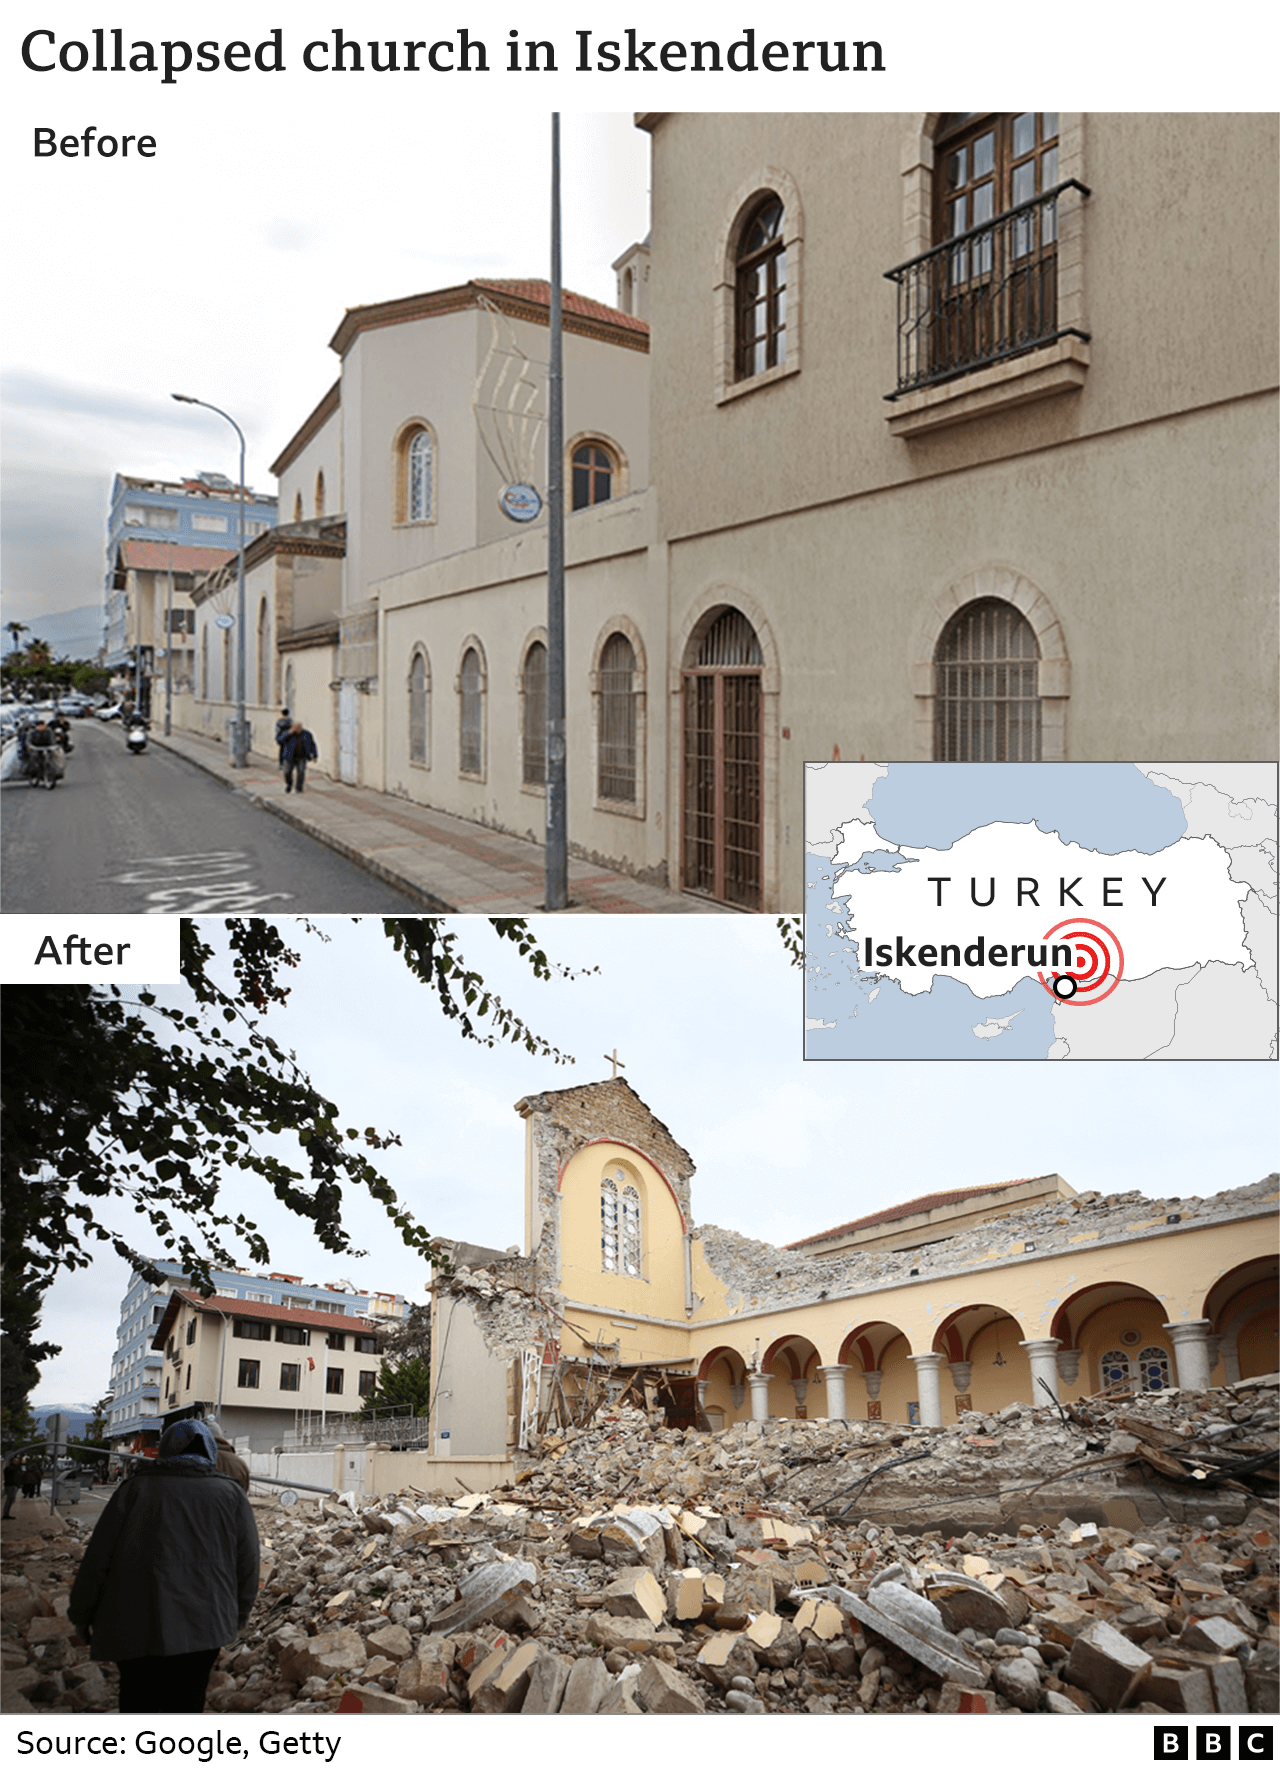 Изображения до и после, показывающие разрушенную церковь в Искендеруне, Турция.